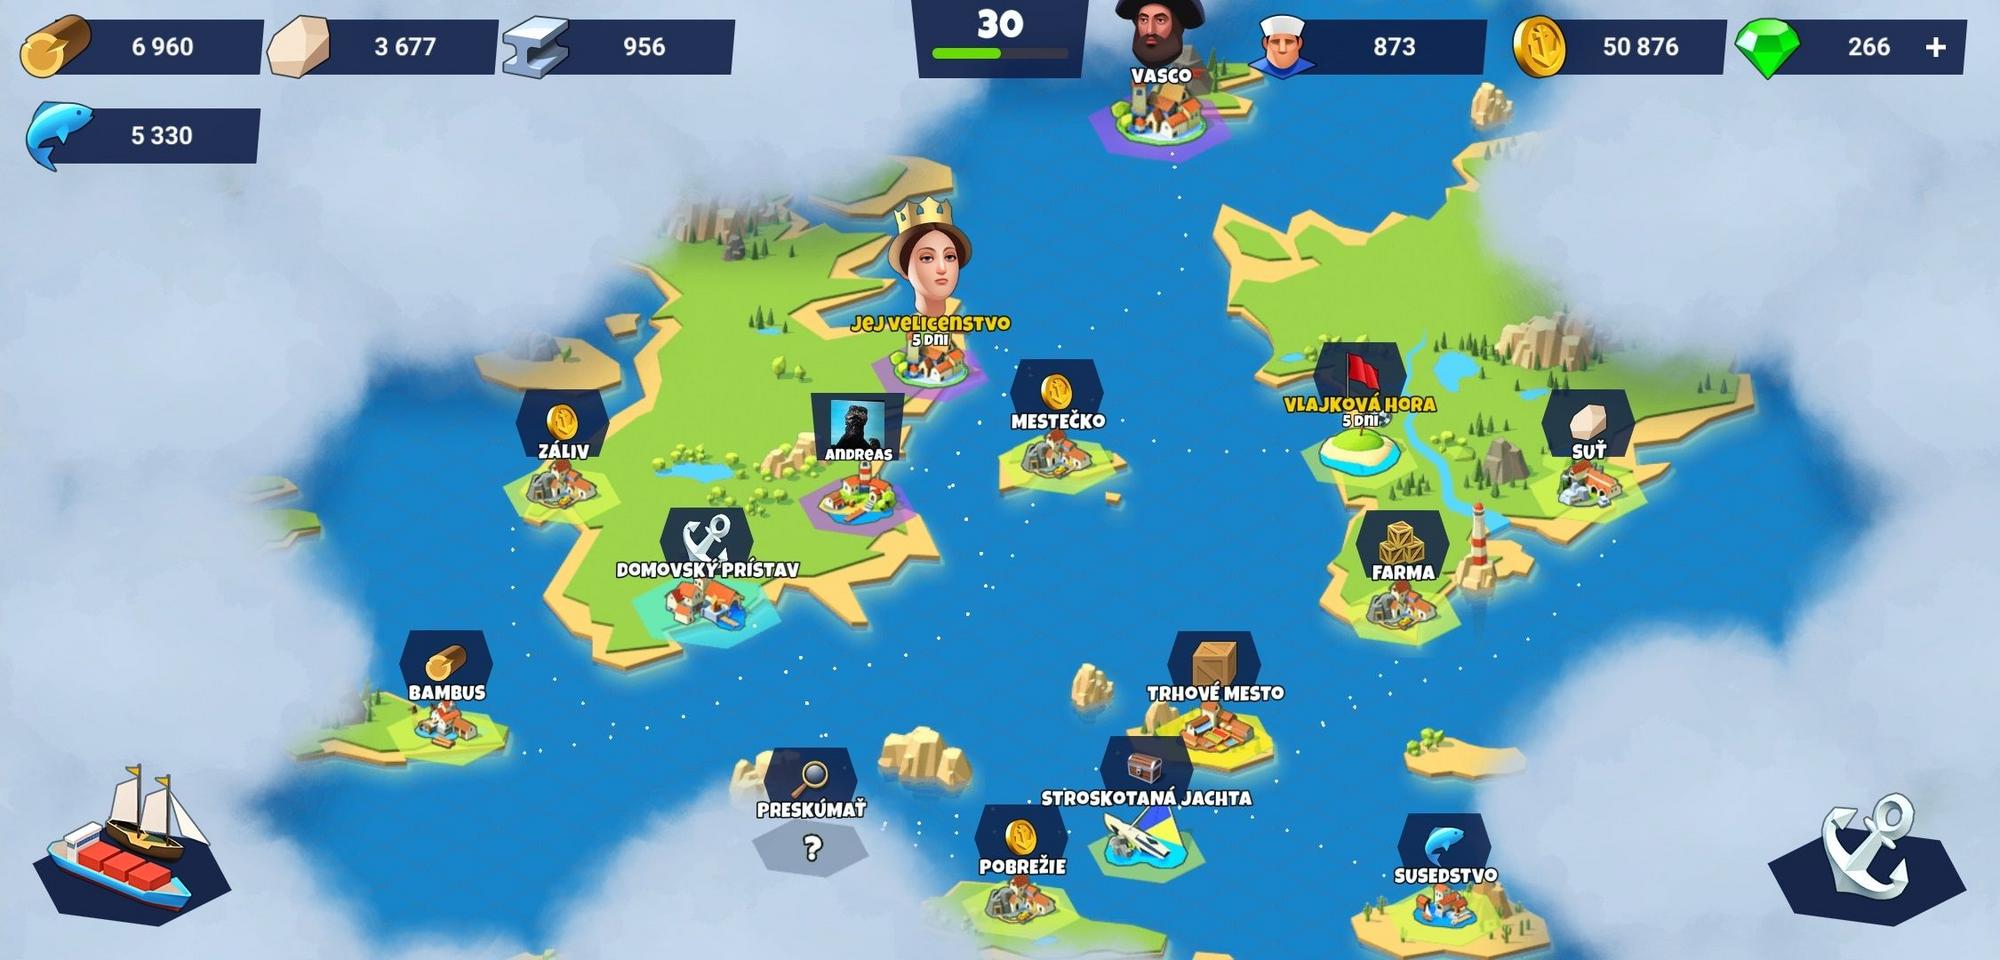 Herná mapa ponúka množstvo miest, kde sa hráč môže so svojou flotilou vyplaviť.